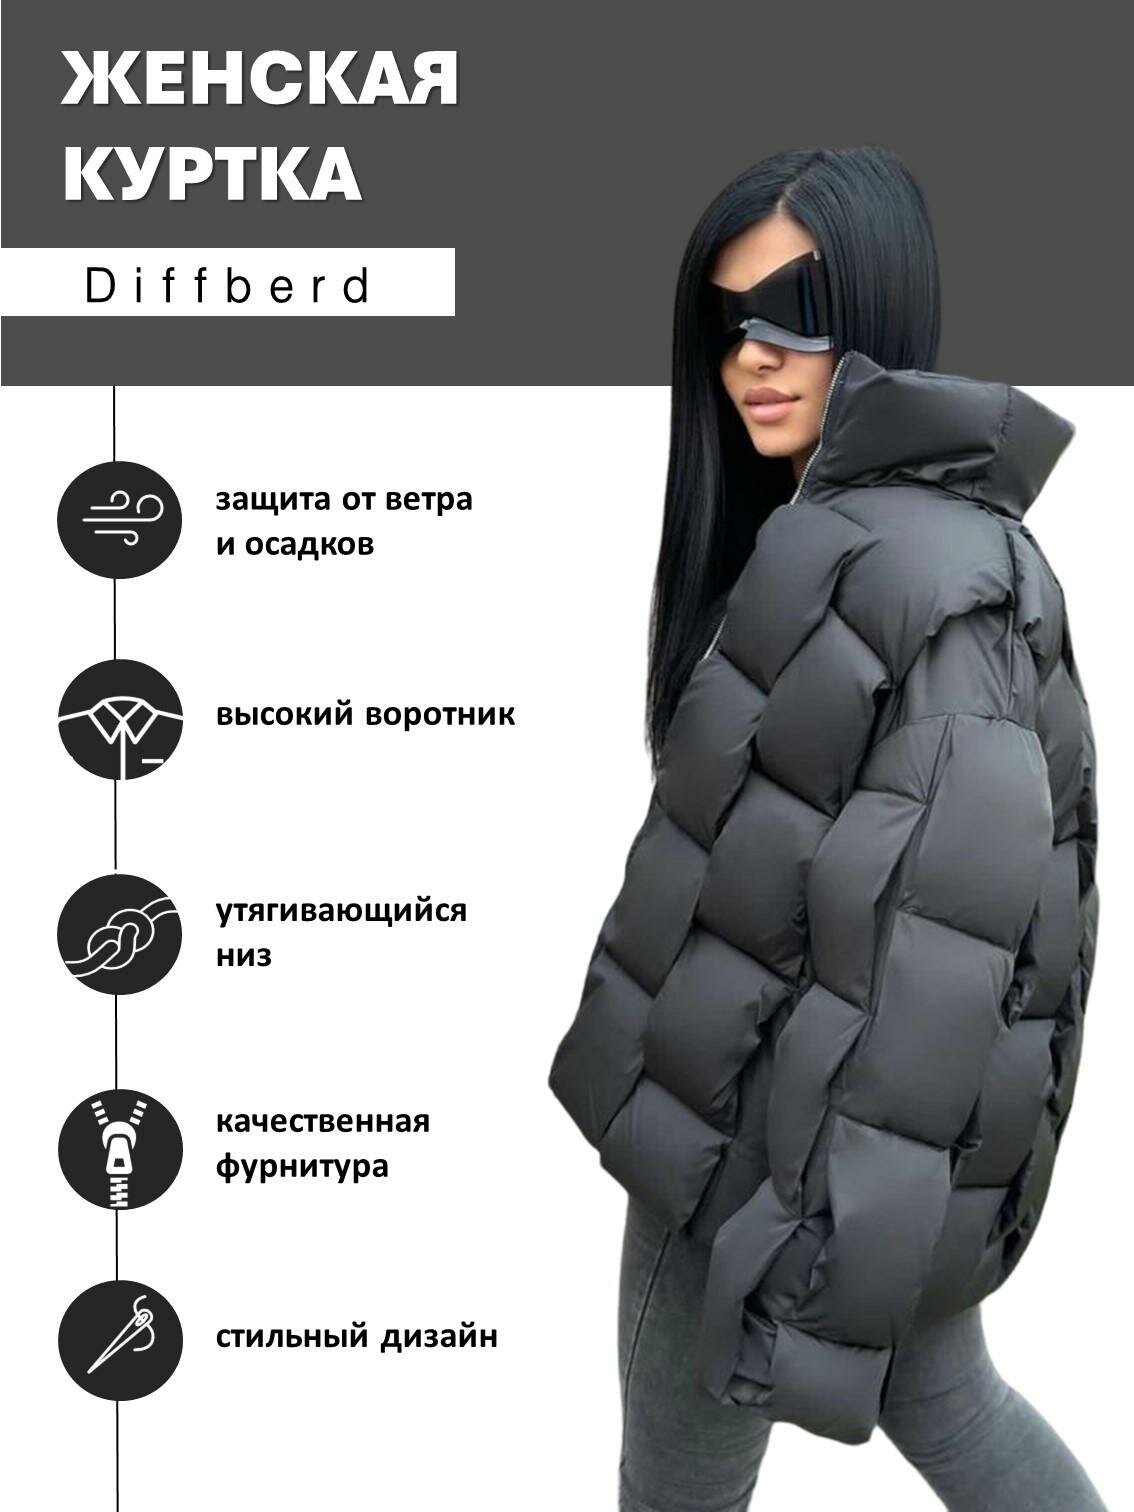 Куртка Diffberd